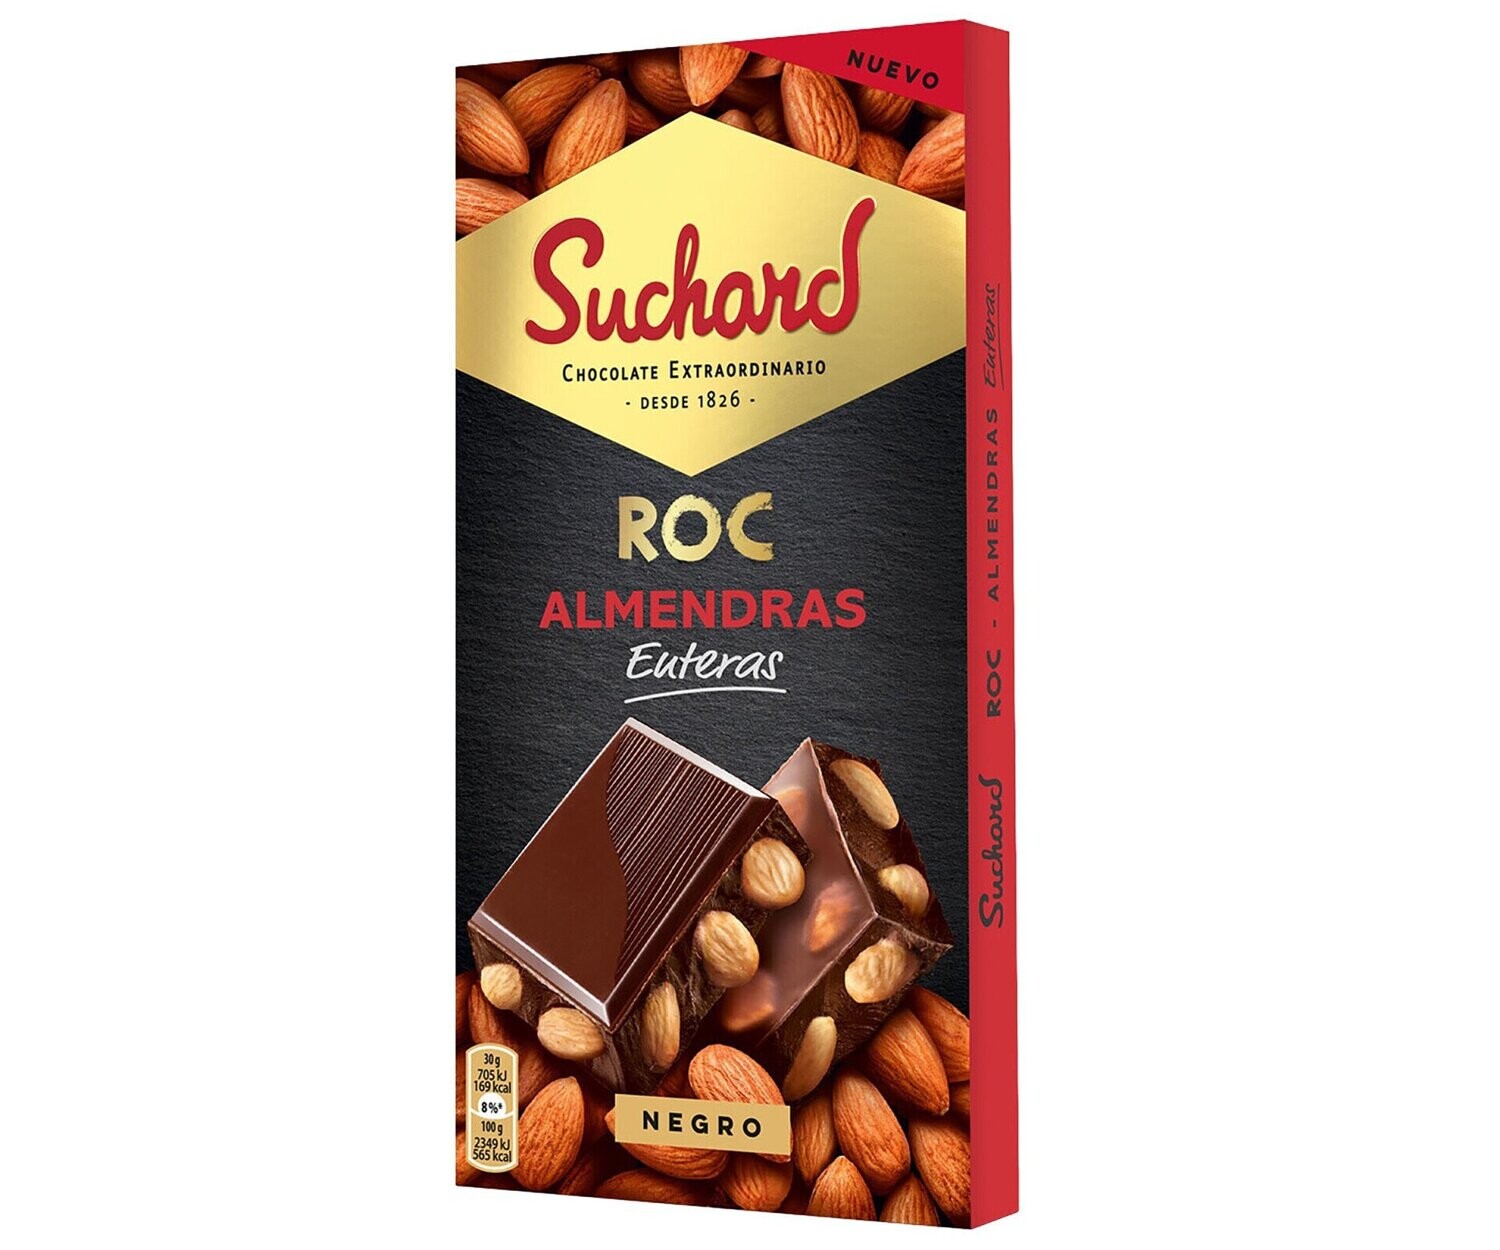 Chocolate Suchard – La tienda